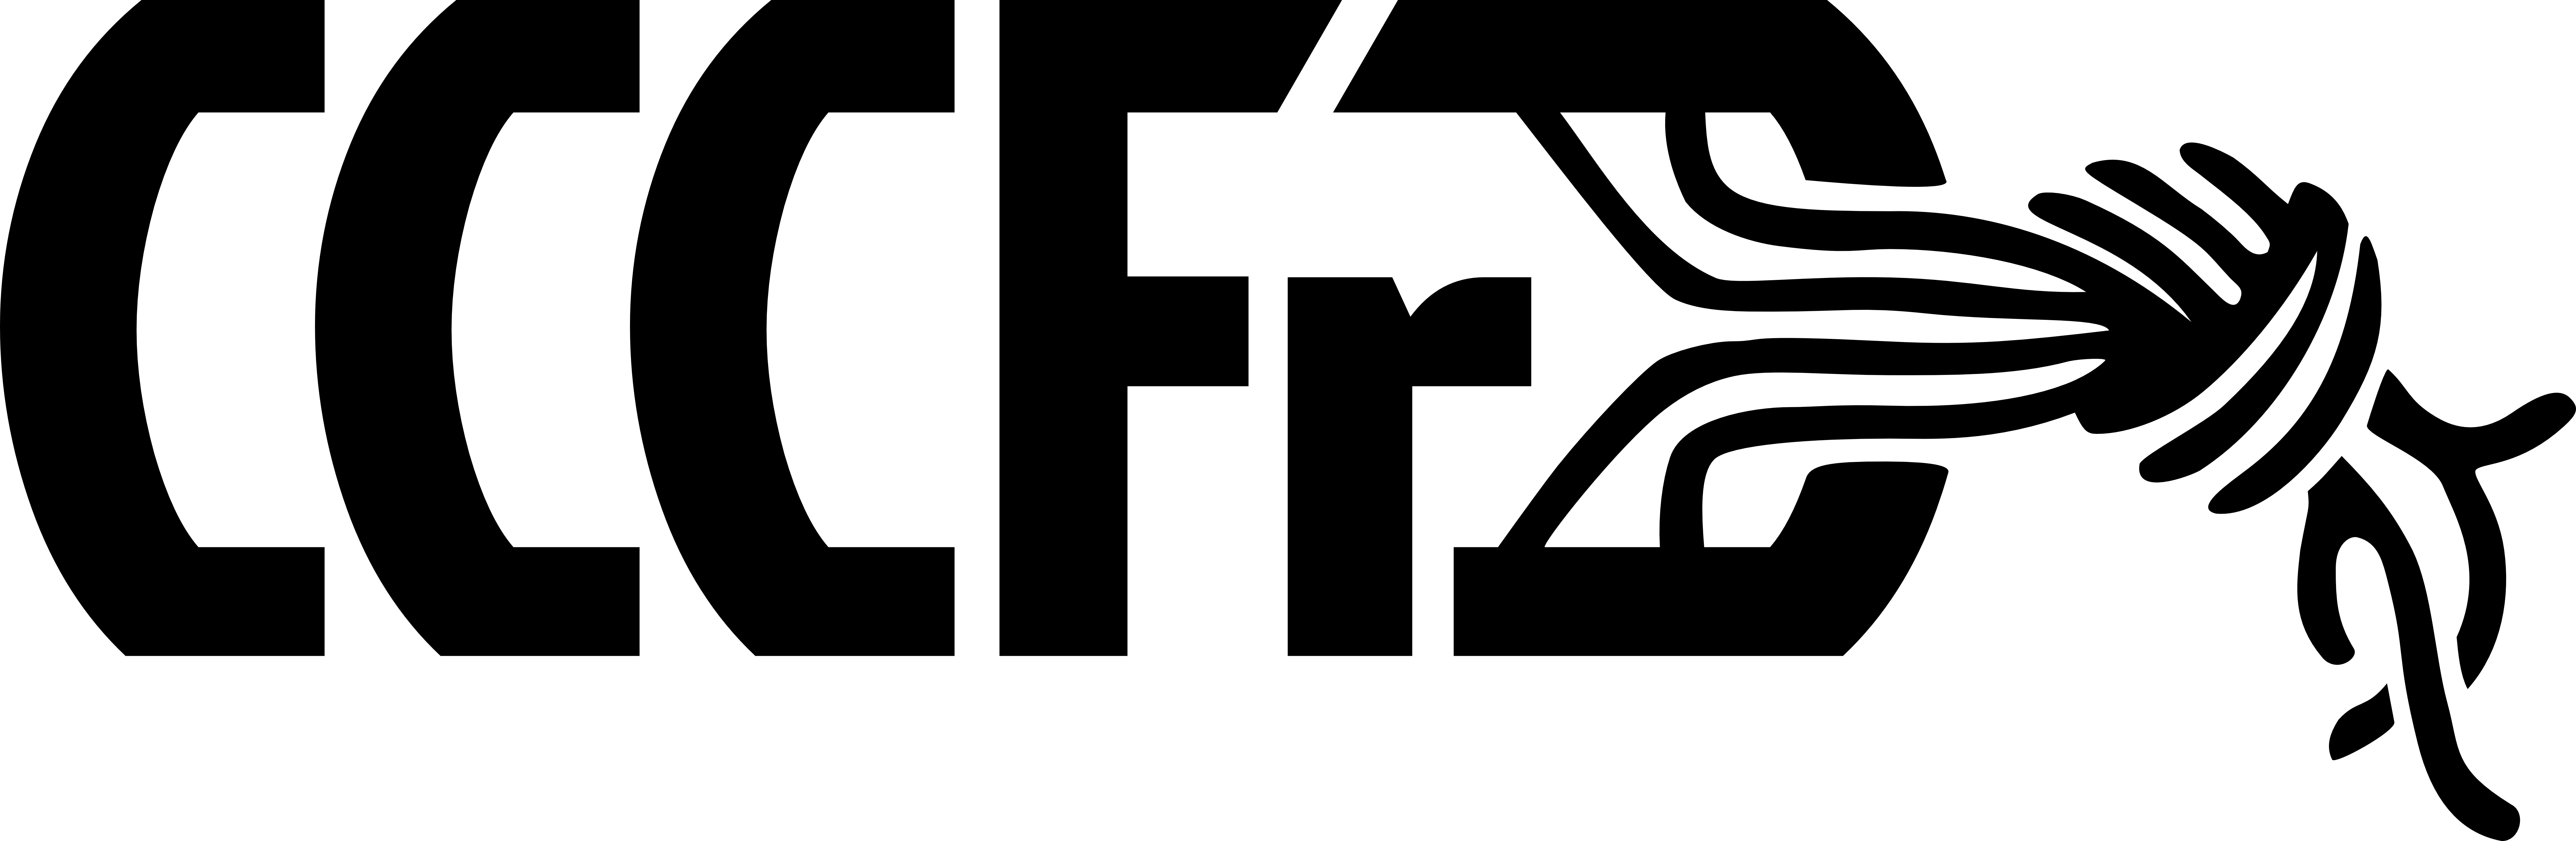 CCCFr Logo - notext